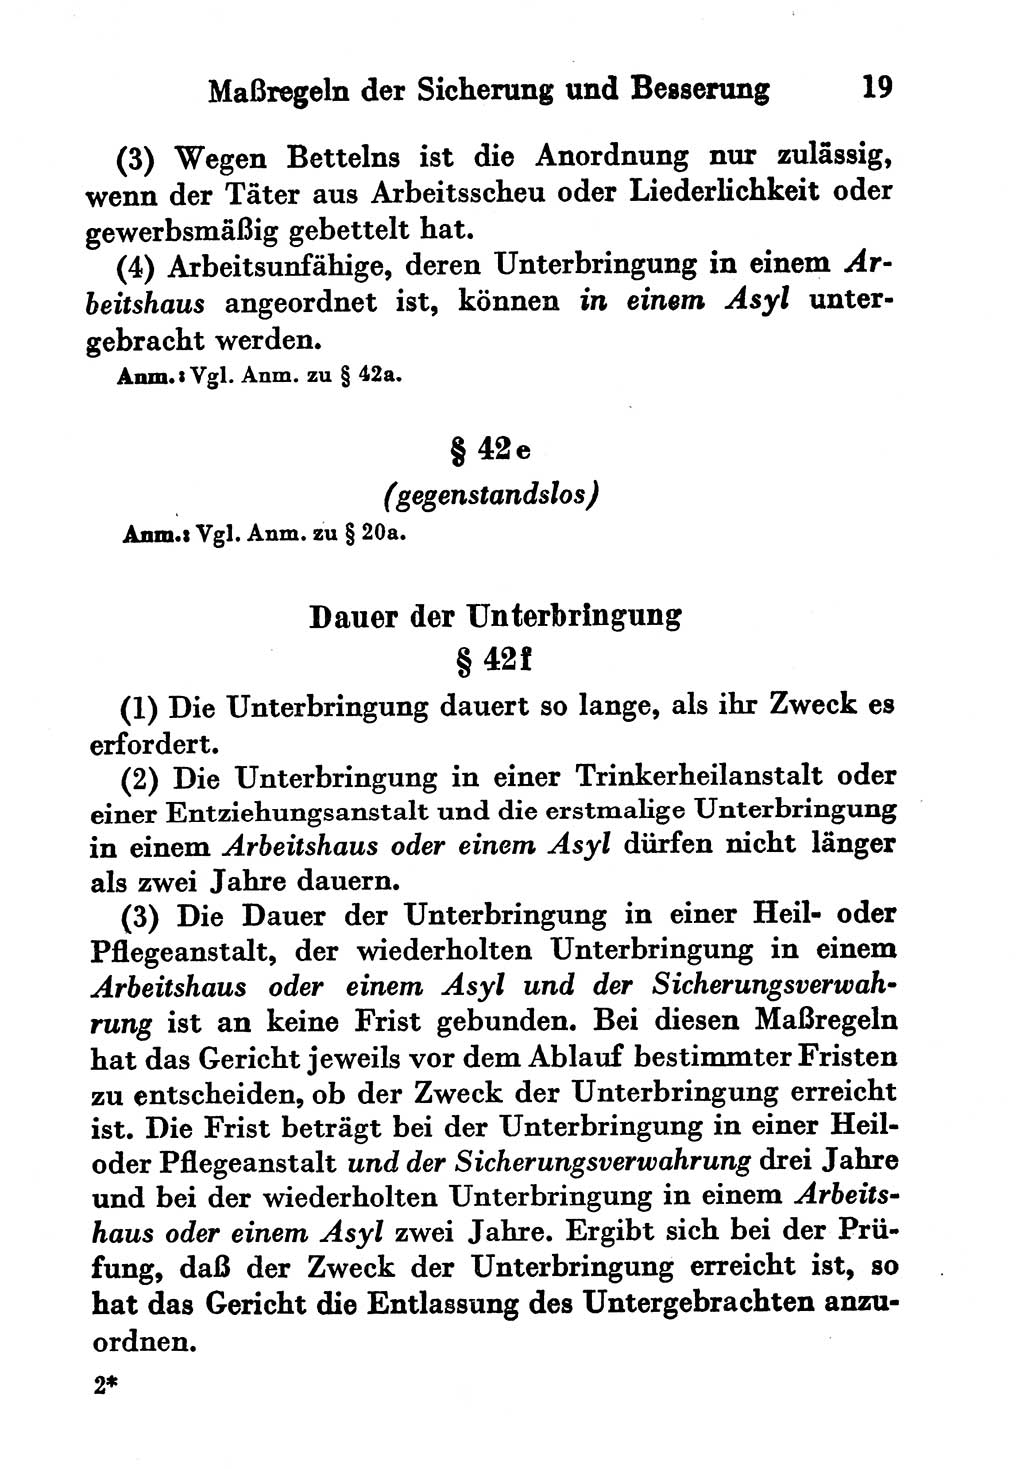 Strafgesetzbuch (StGB) und andere Strafgesetze [Deutsche Demokratische Republik (DDR)] 1956, Seite 19 (StGB Strafges. DDR 1956, S. 19)